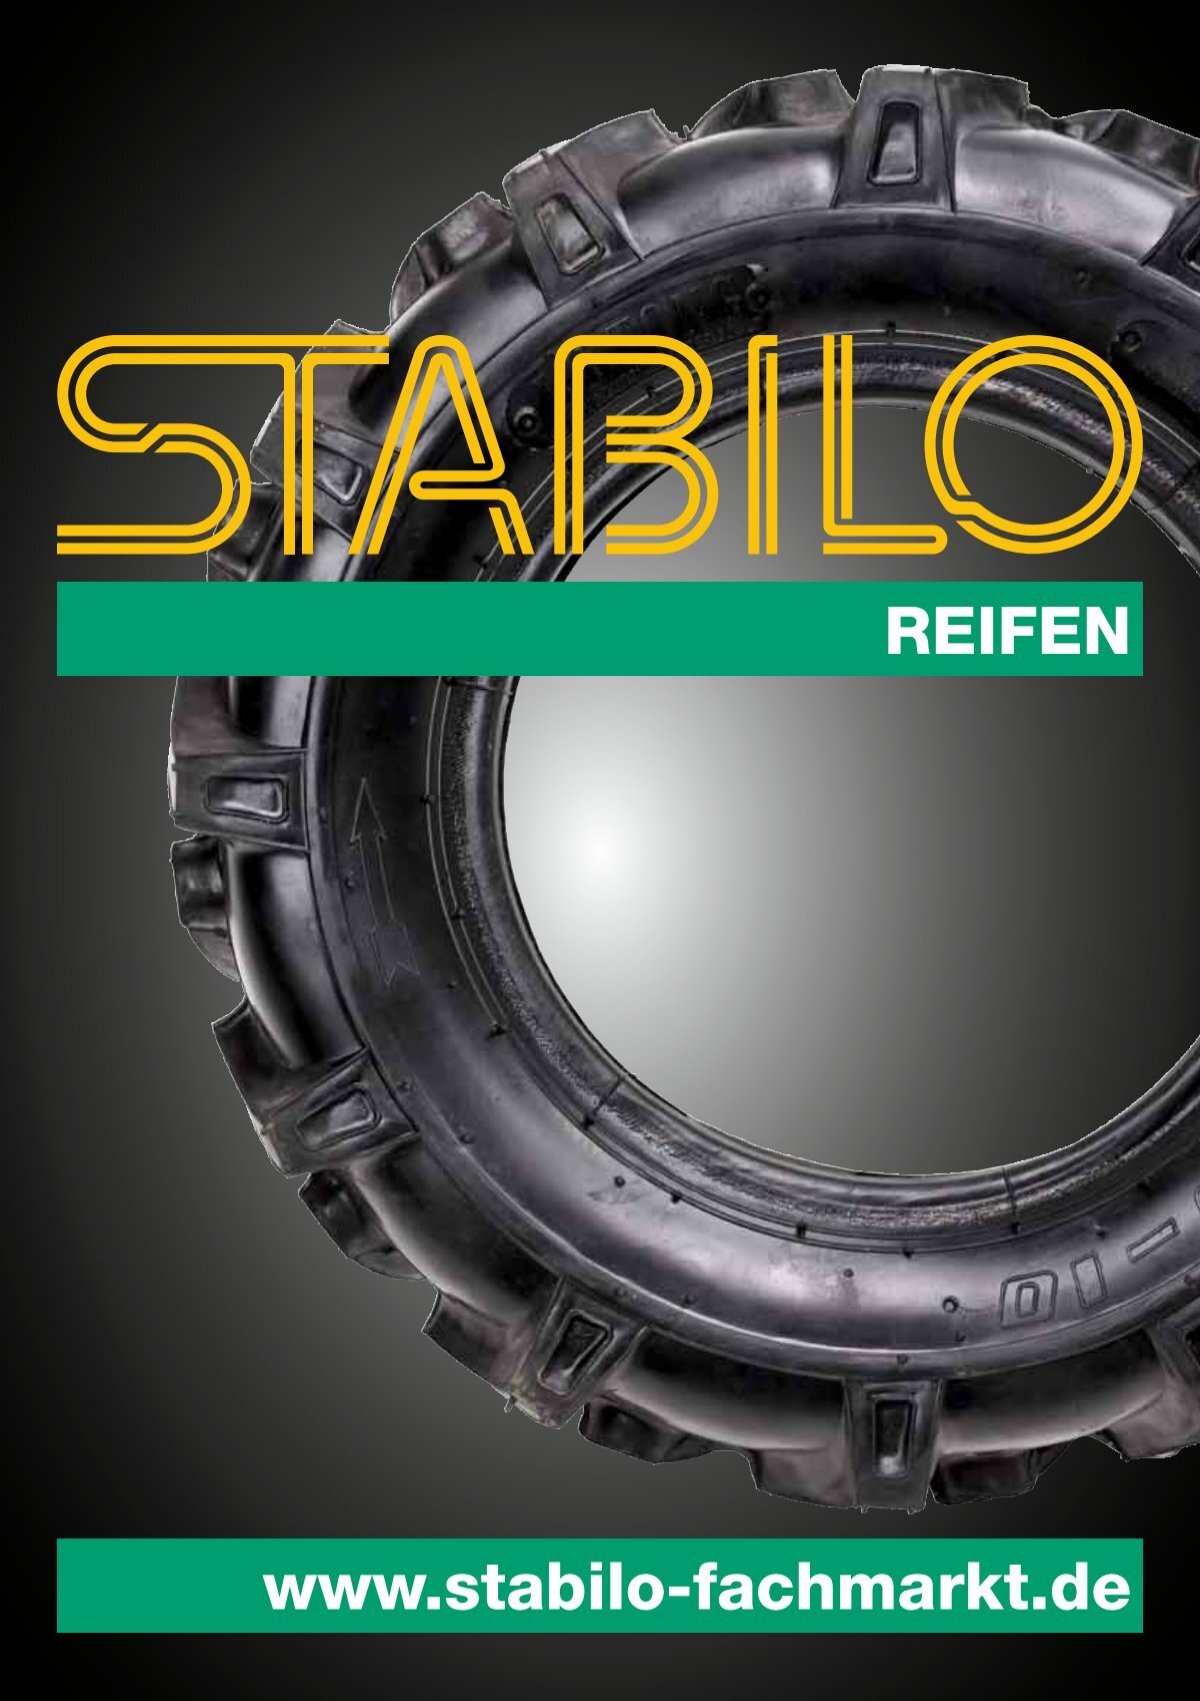 STABILO - Landwirtschaft, Haus, Hof & Garten Reifen - Katalog 2015